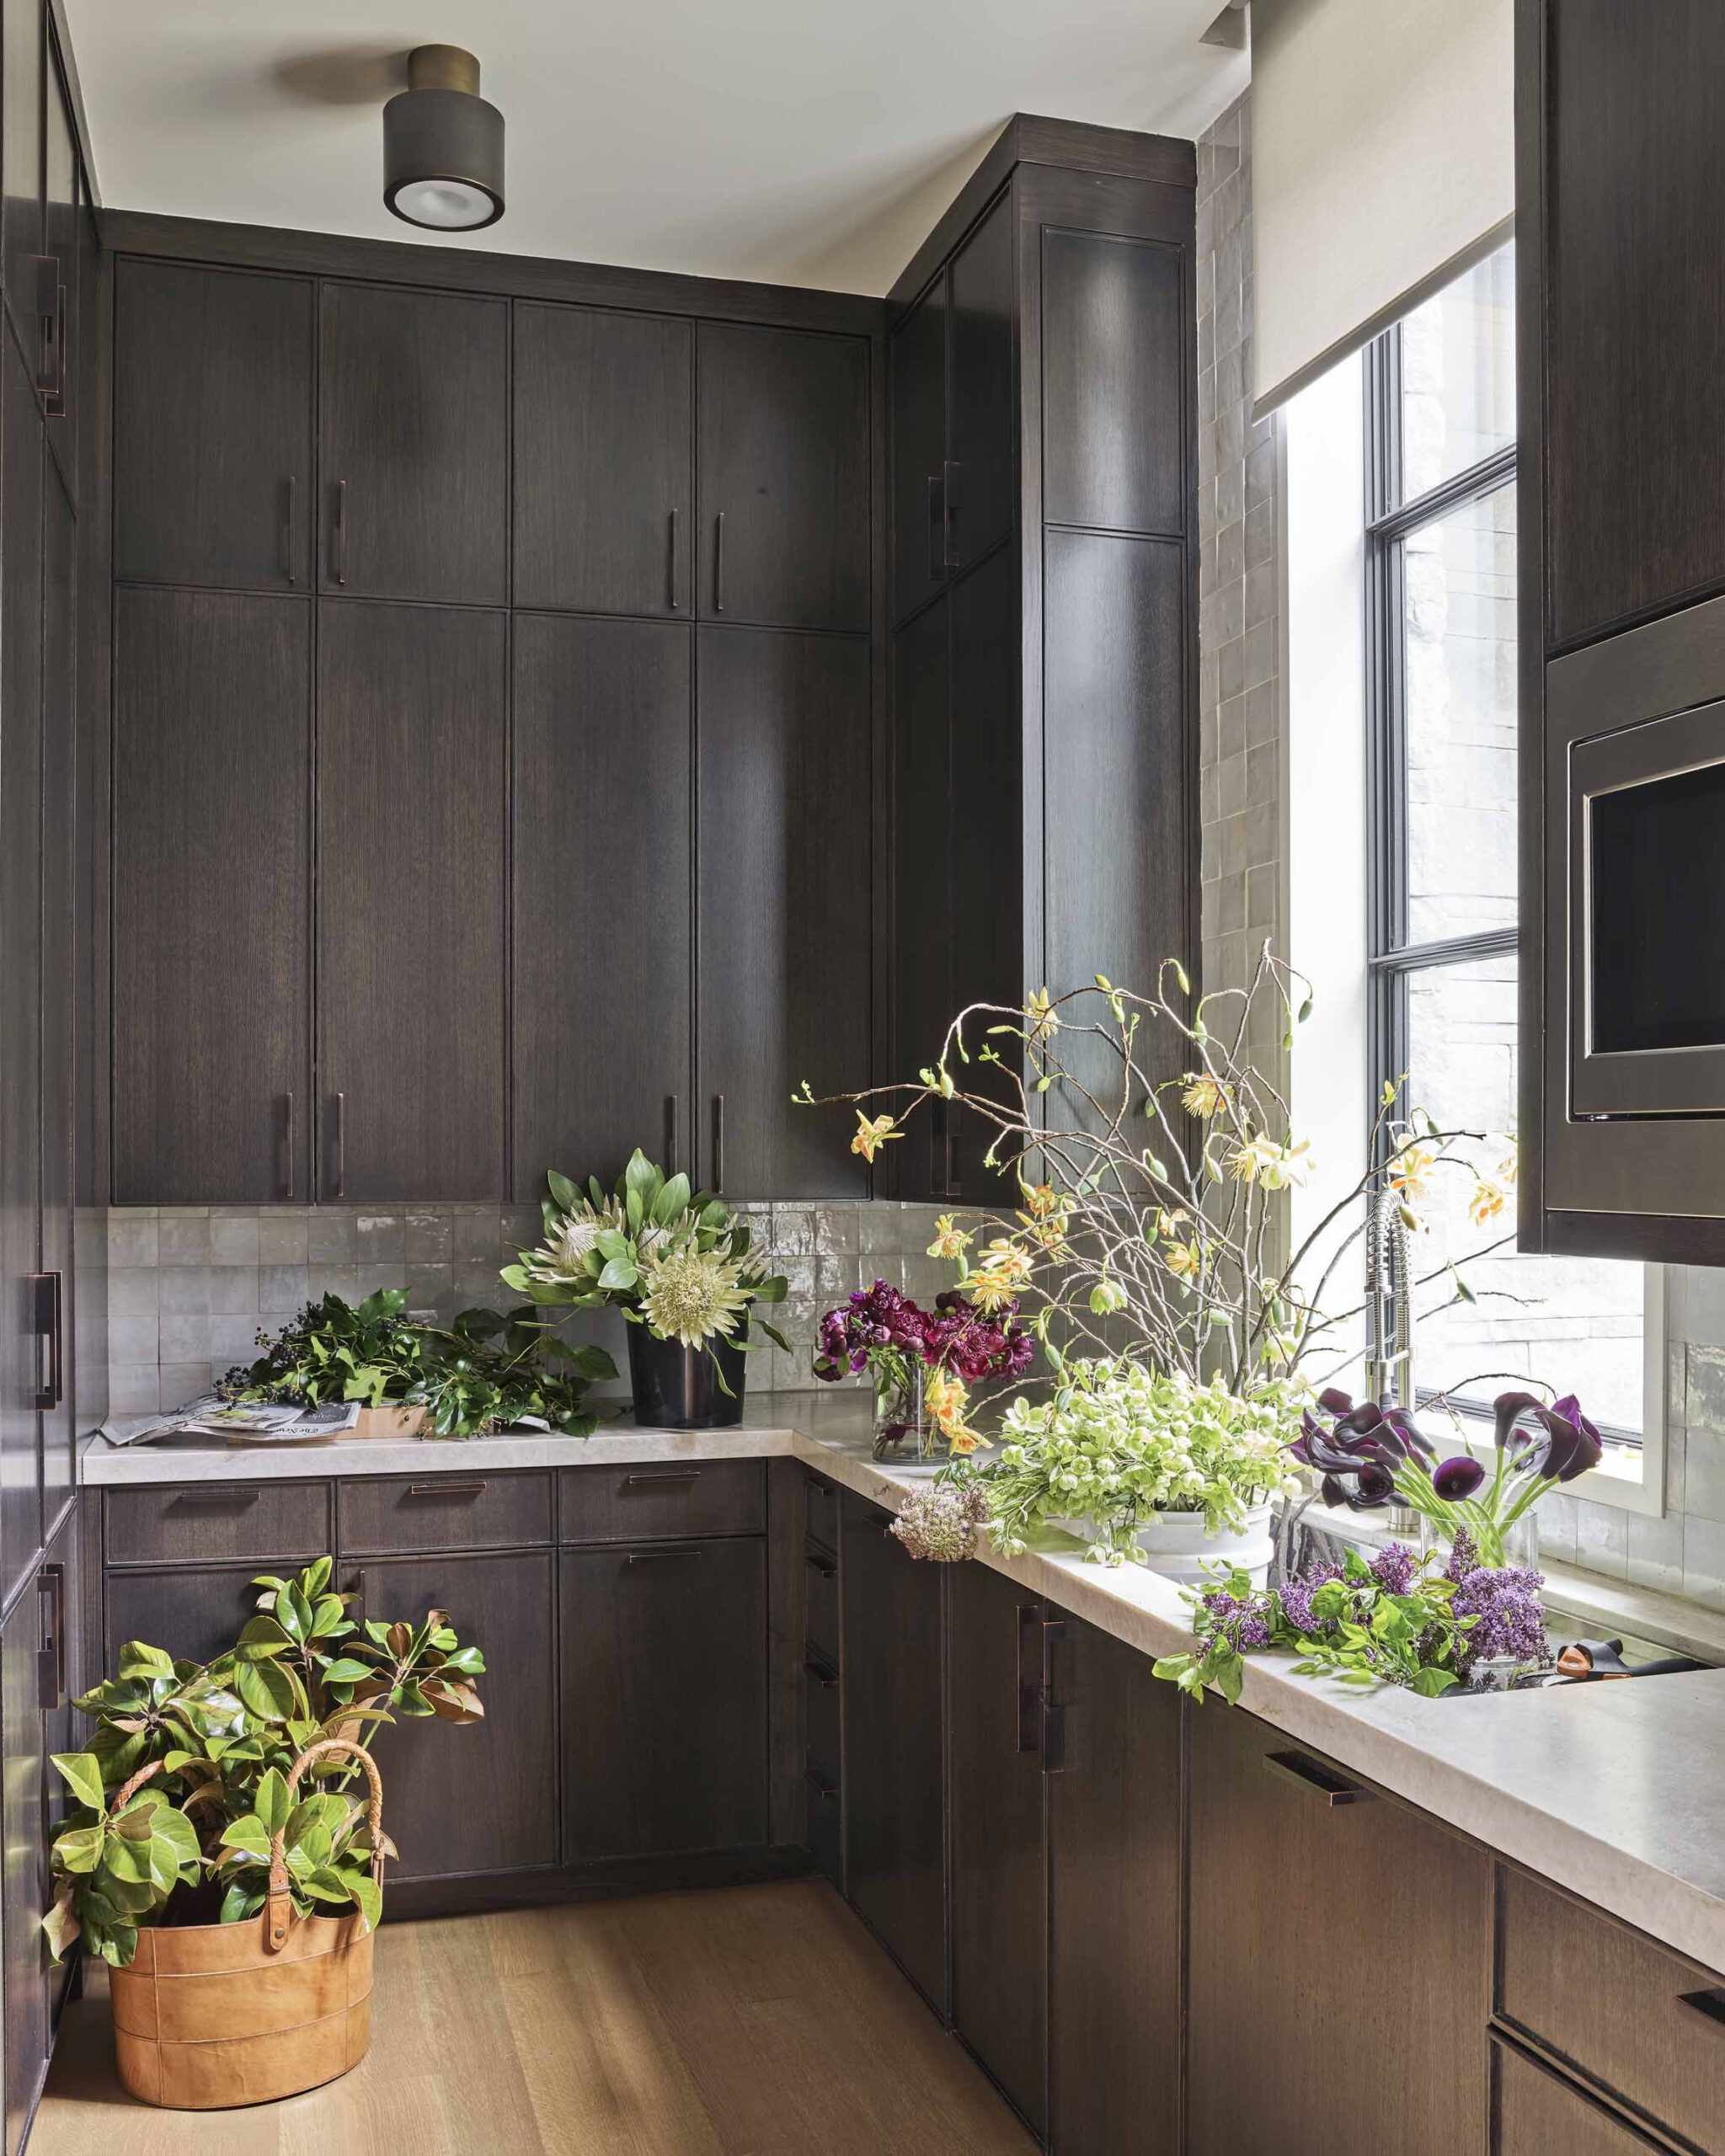 Best Kitchen Cabinet Ideas - Beautiful Kitchen Cabinet Design